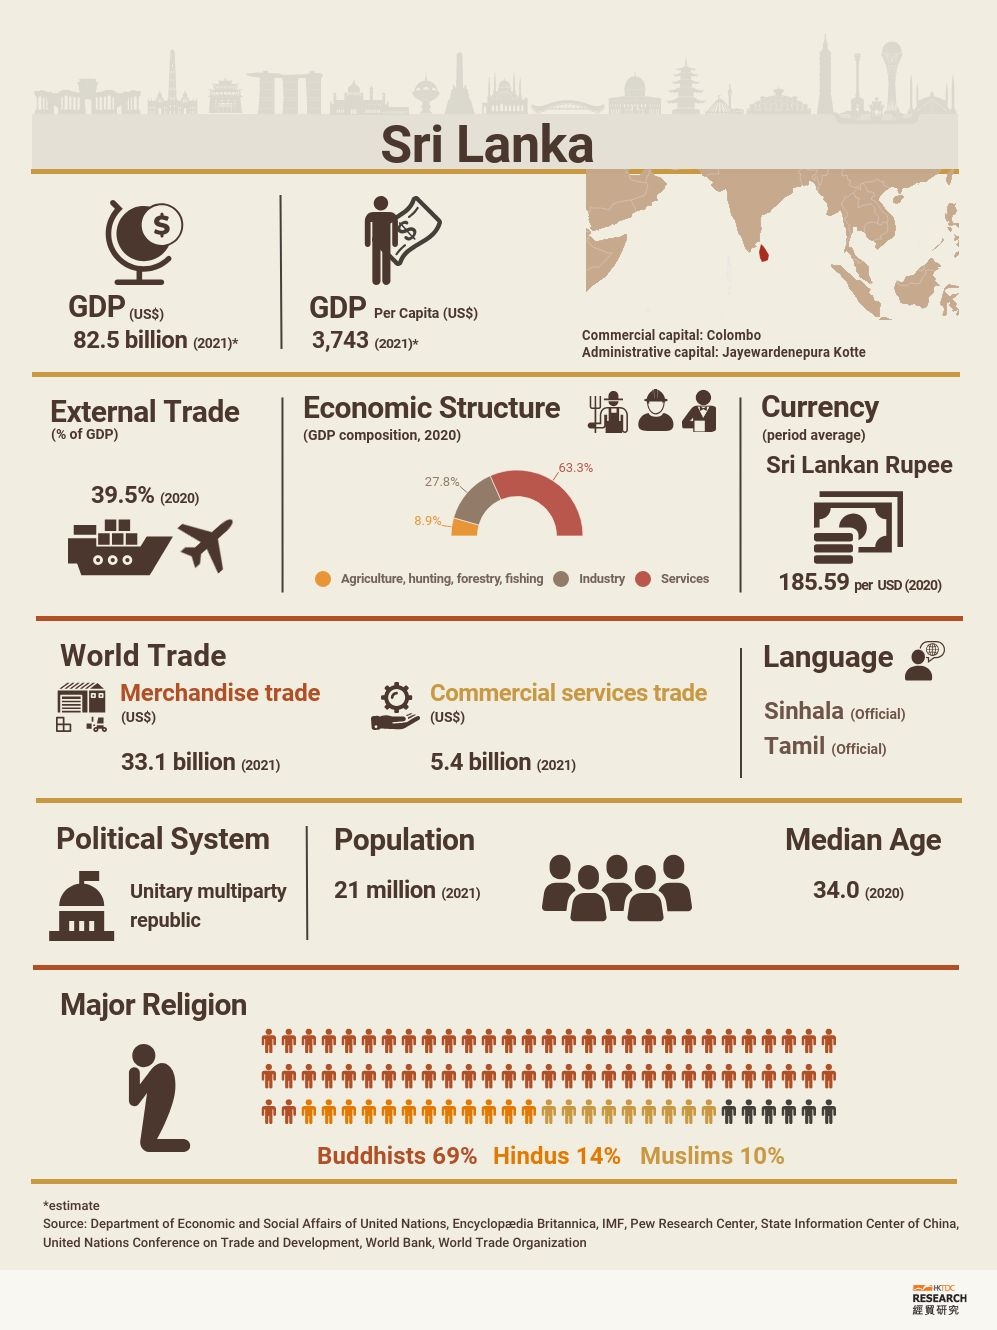 Sri Lanka: Market Profile | HKTDC Research